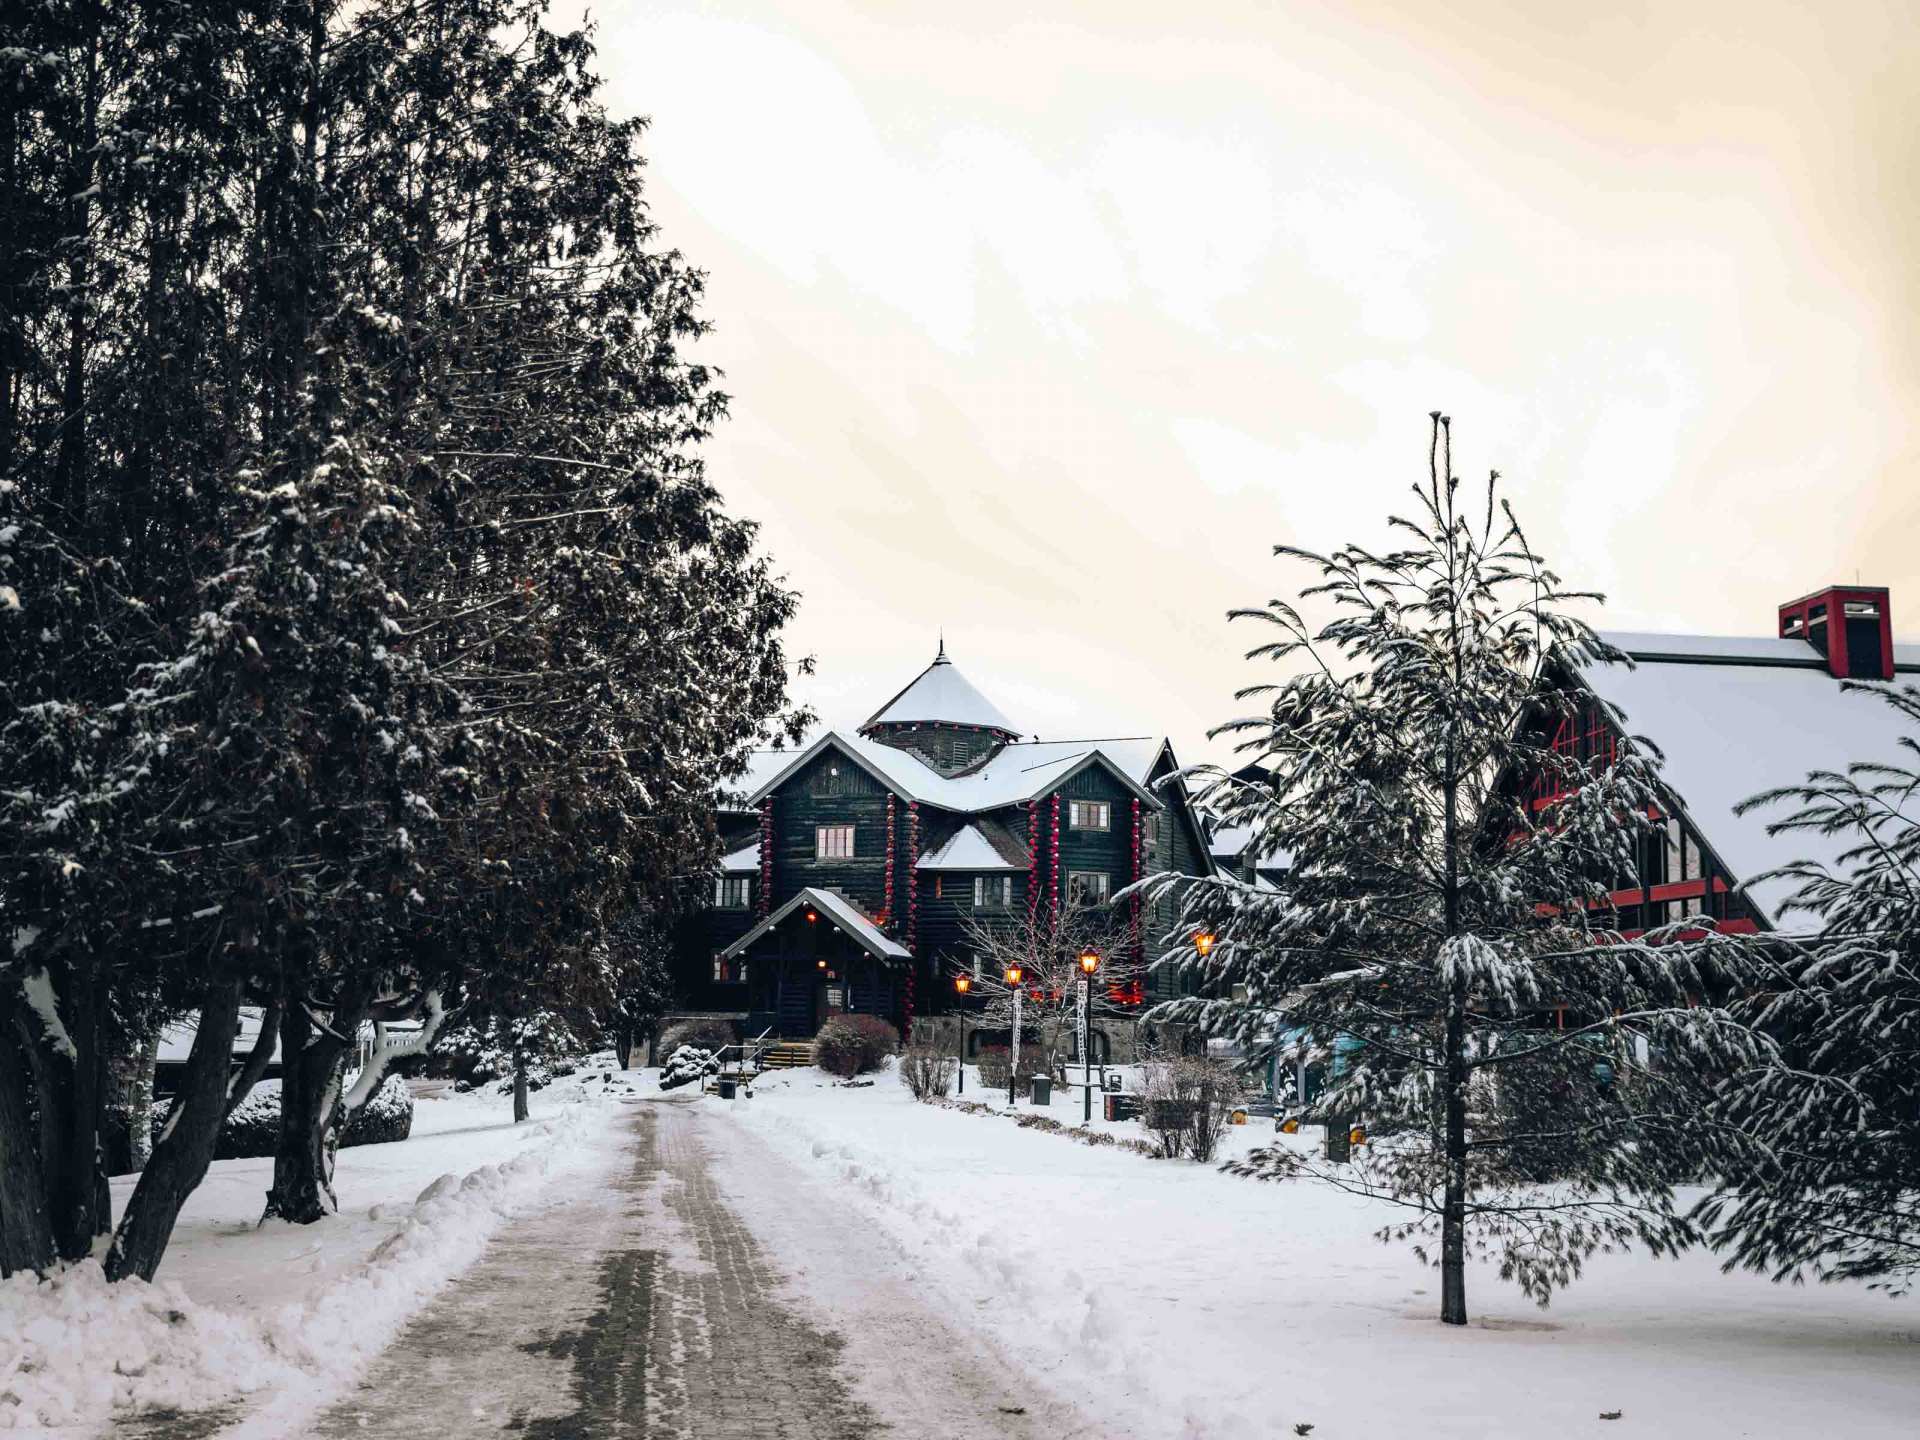 Fairmont Le Château Montebello | The snowy exterior of Fairmont Le Château Montebello